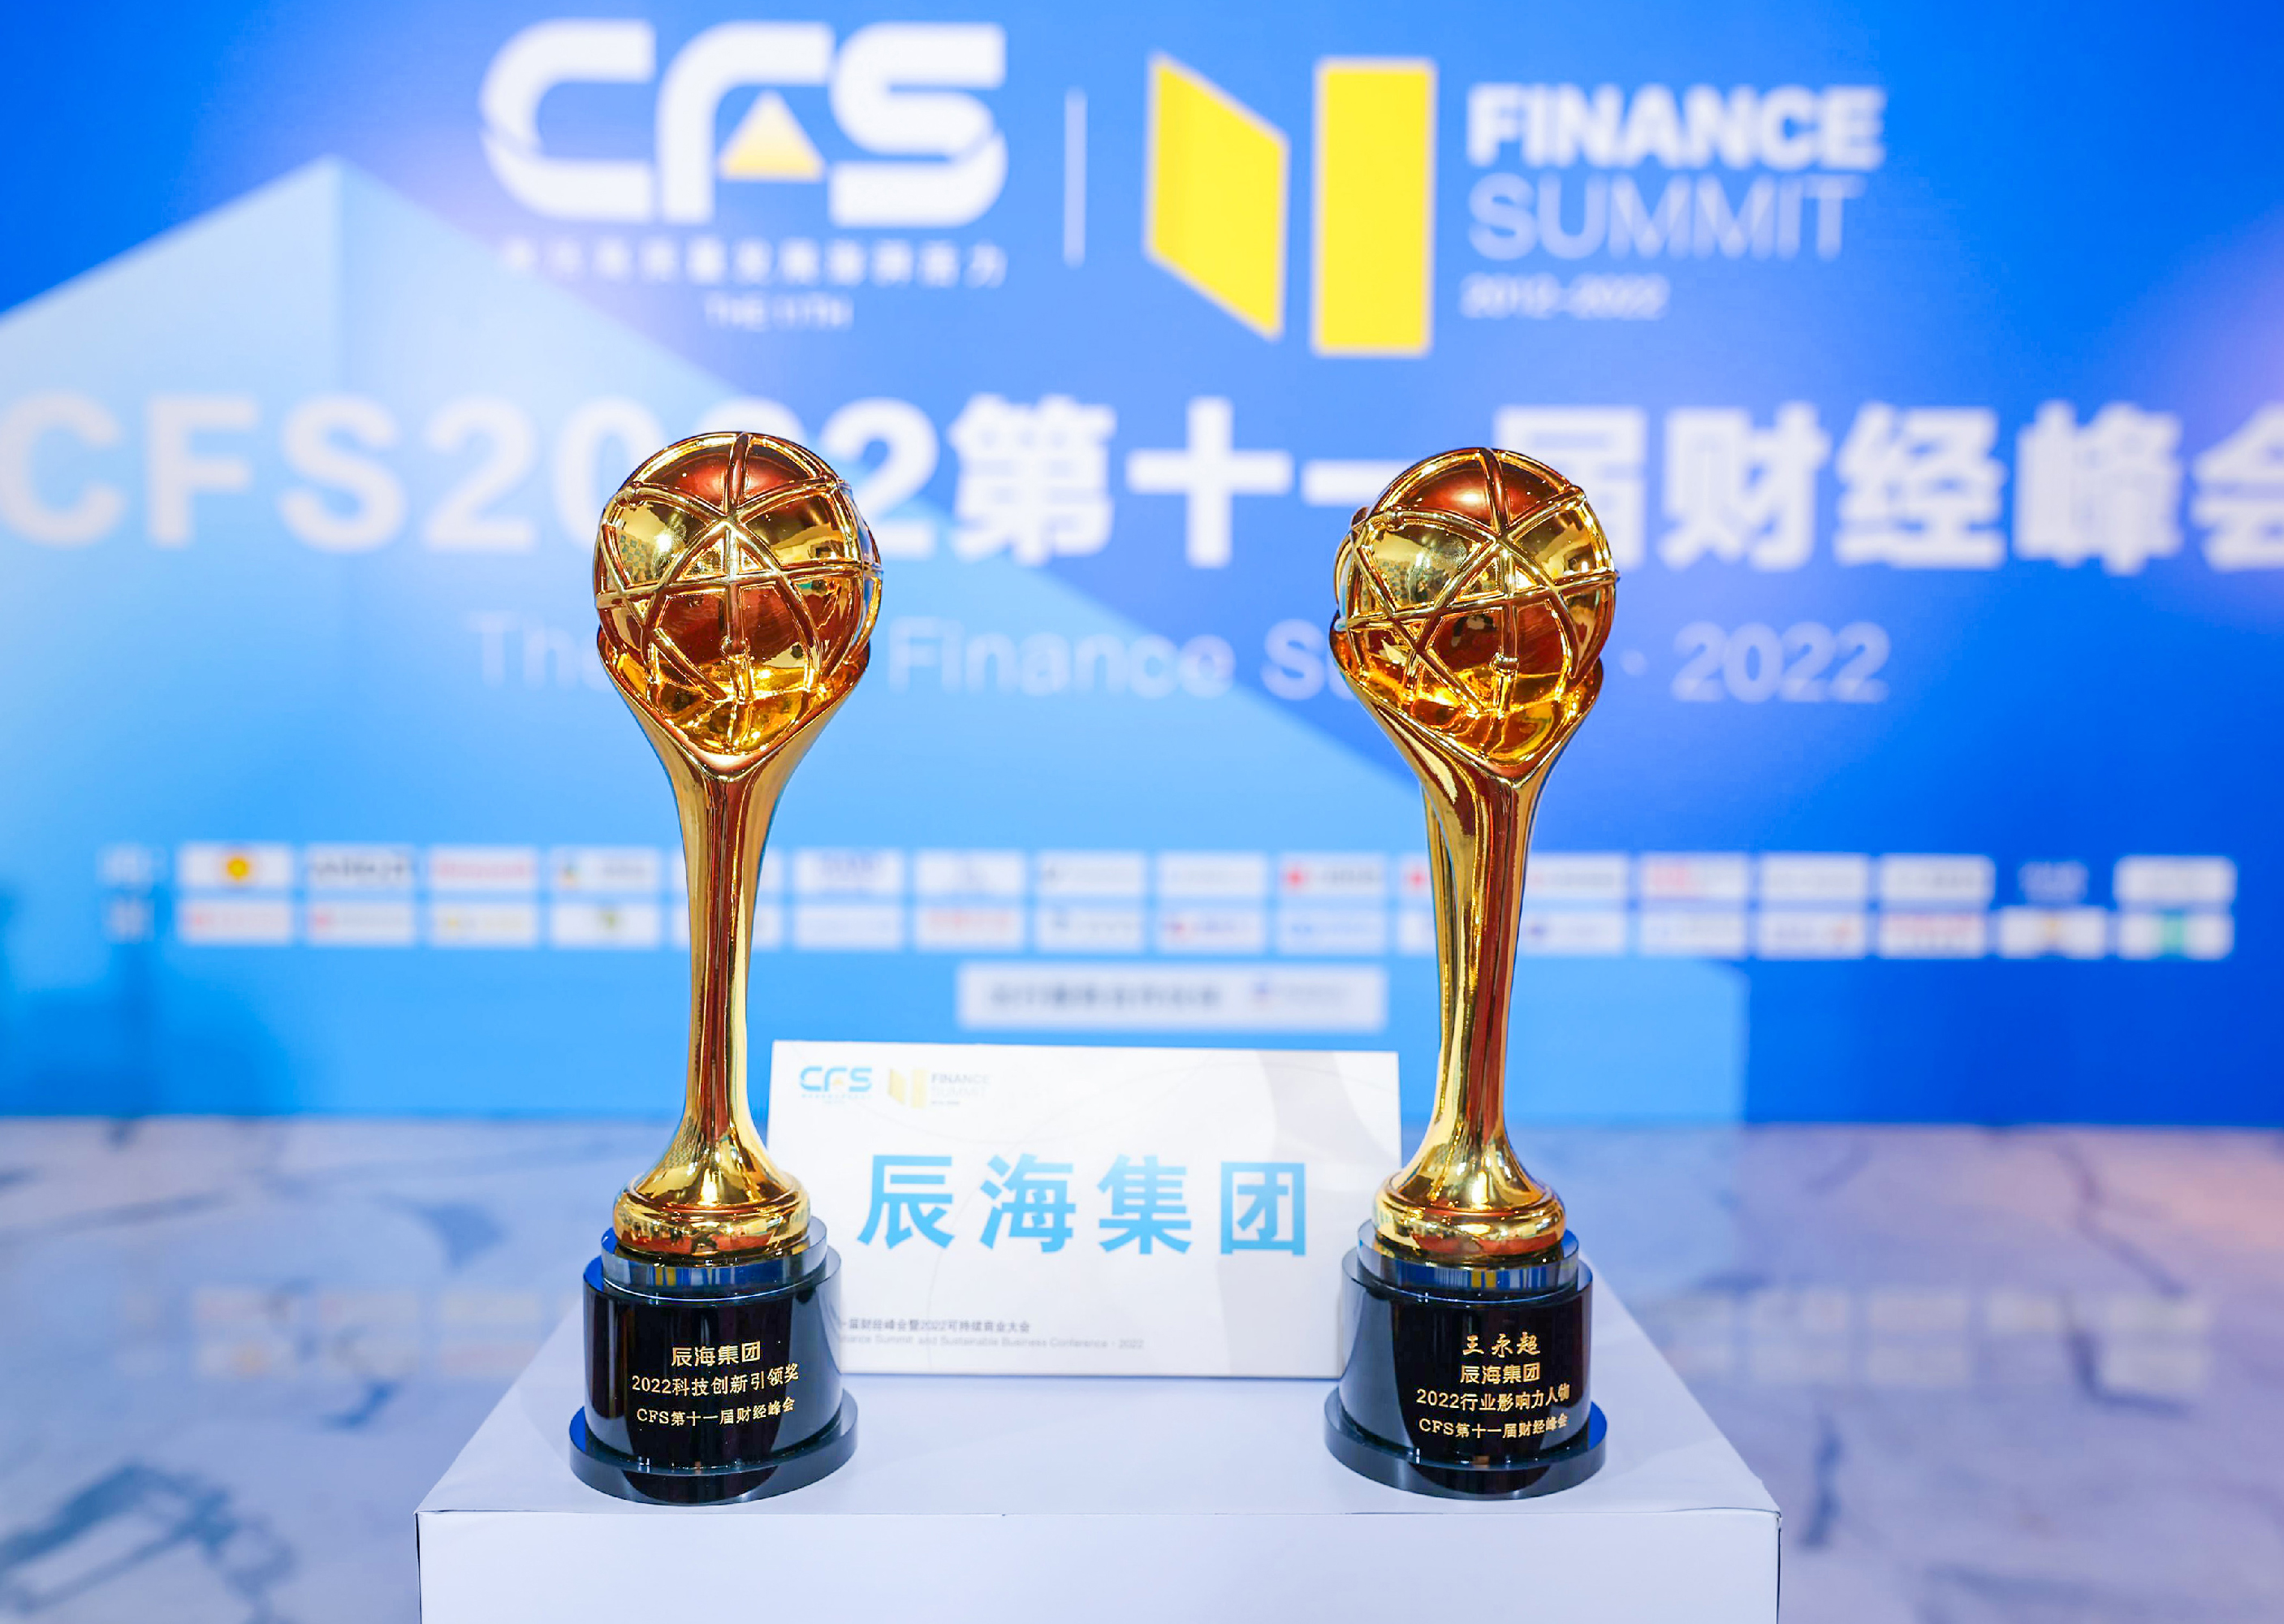 第十一届中国财经峰会落幕，辰海集团斩获“2022科技创新引领奖”和“2022行业影响力人物奖”